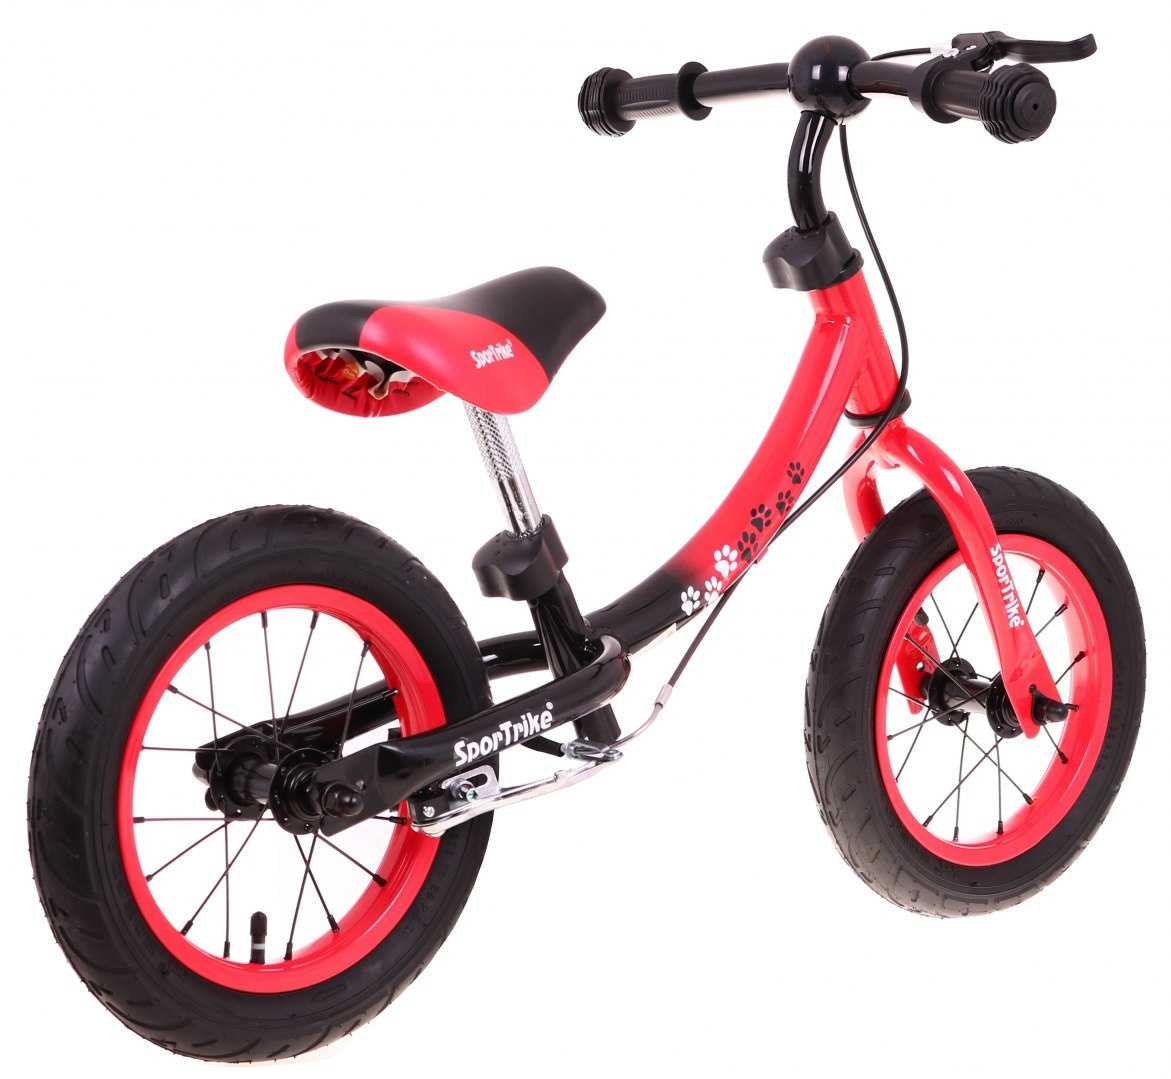 Balansinis dviratis SporTrike Boomerang 10-12, raudonas